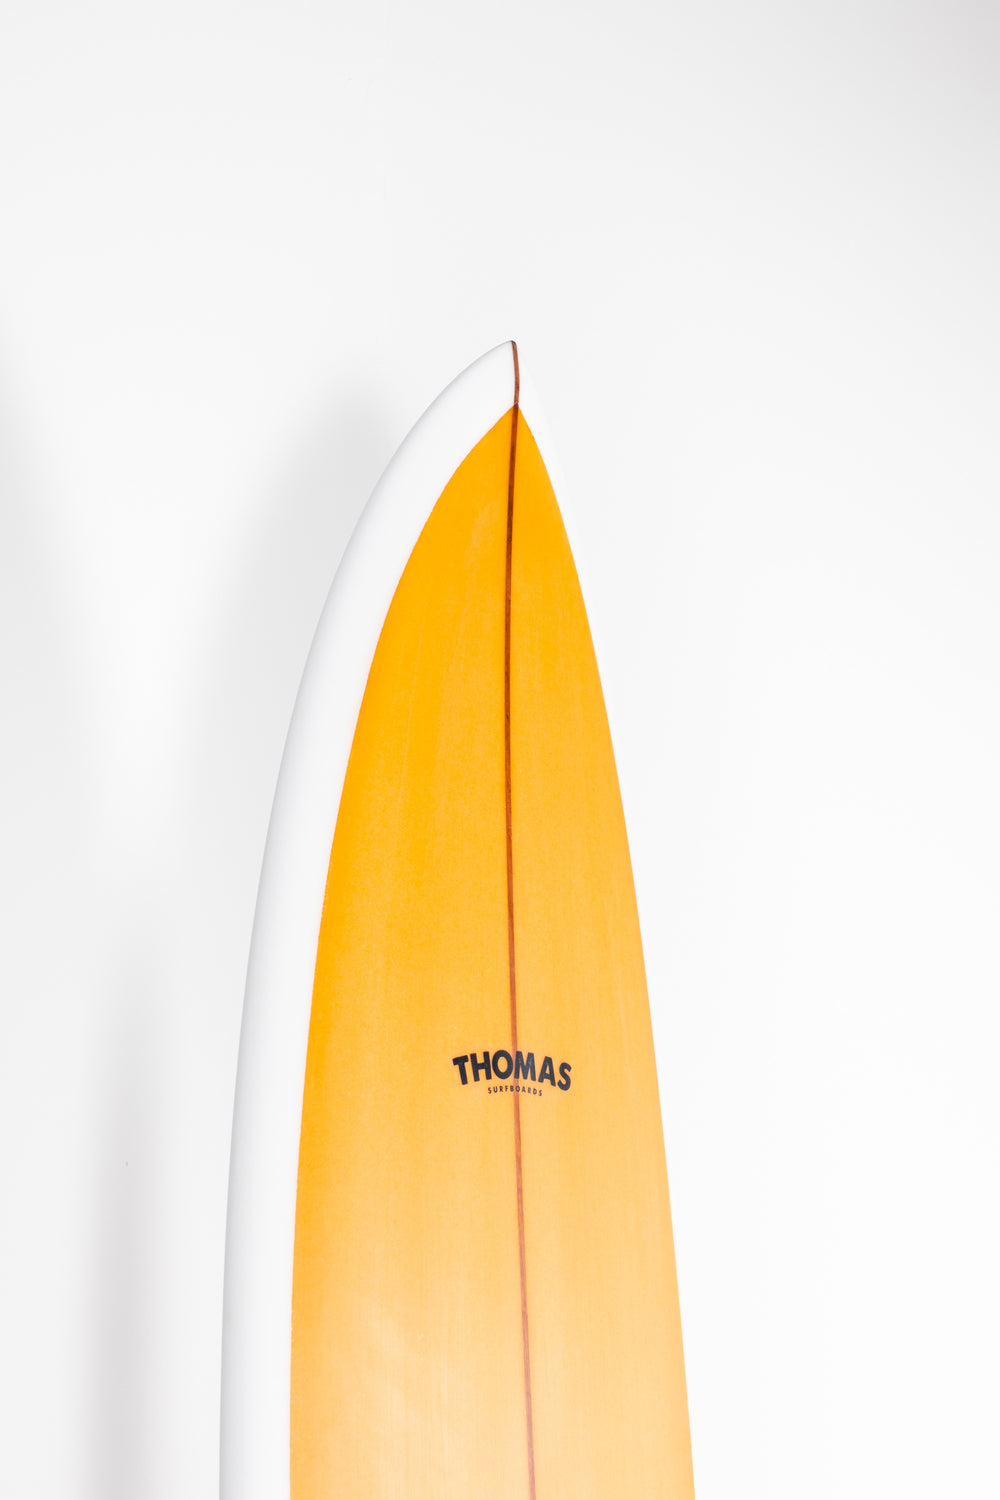 Thomas Surfboards - LONG FISH - 7'8